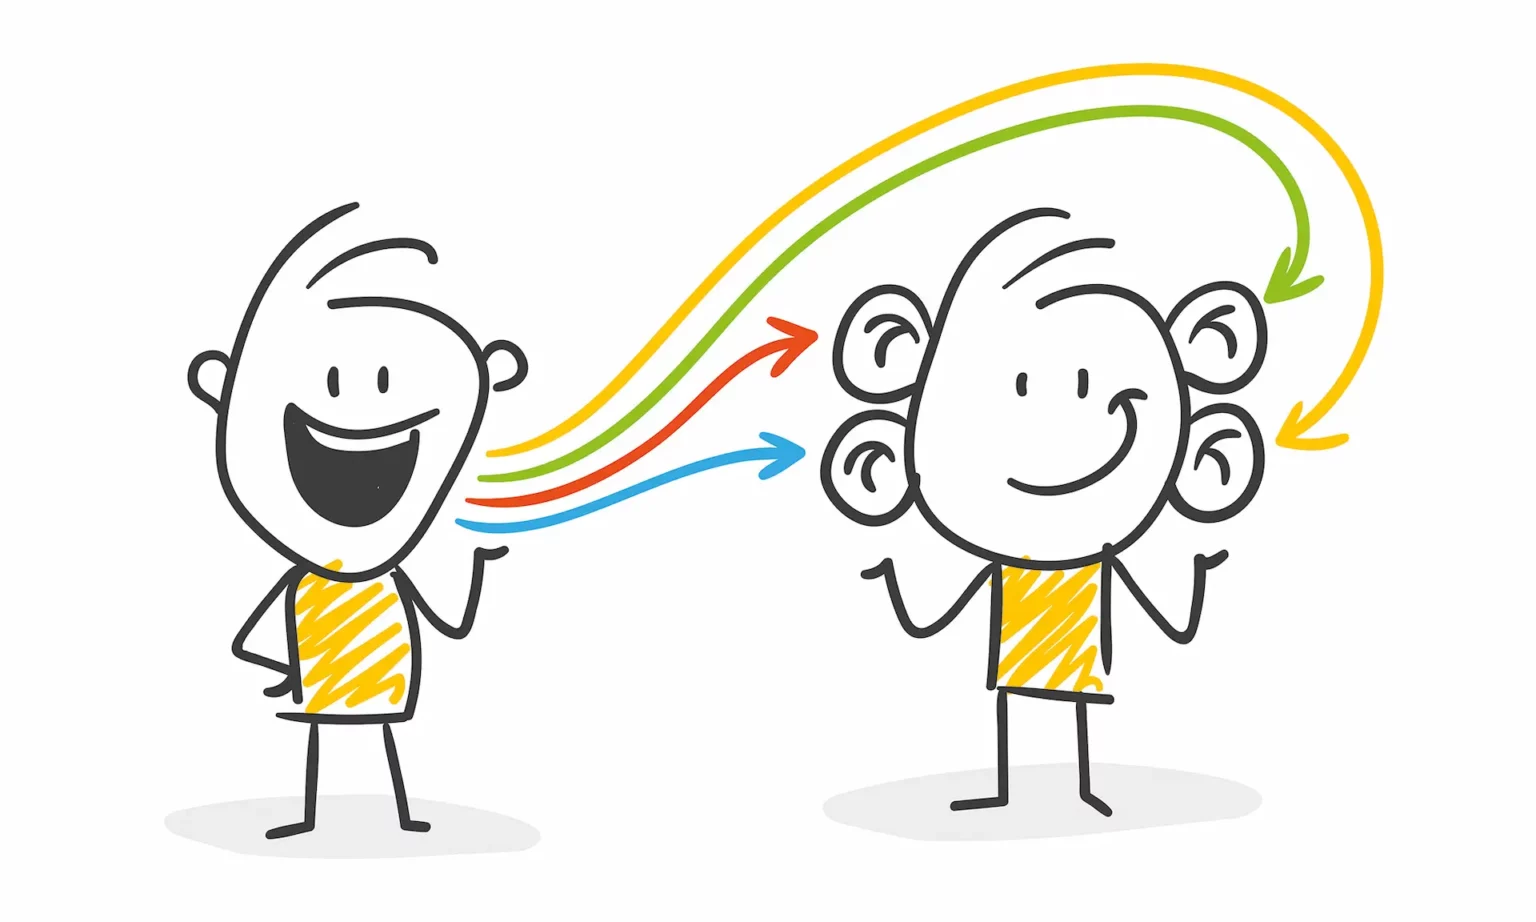 Kommunikative Illustration: Zwei gezeichnete Männchen, eins spricht mit vier Sprachlinien, anderes Männchen mit 4 Ohren.